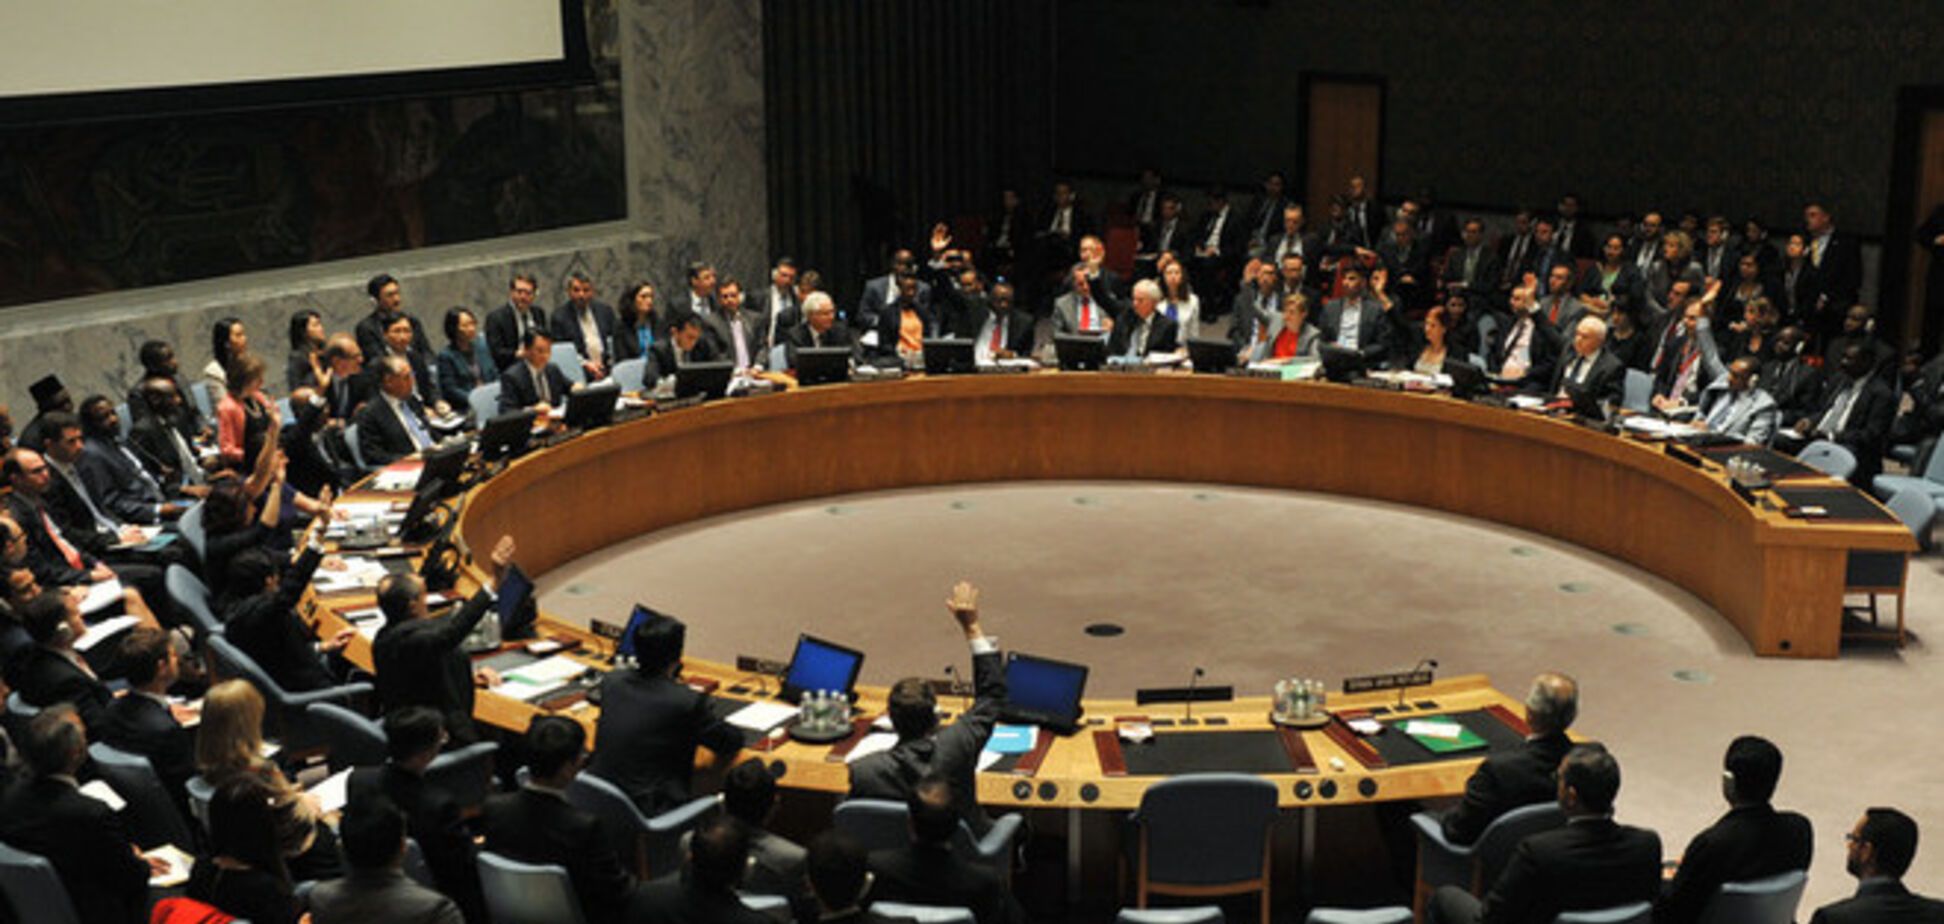 Совбез ООН проведет заседание по ситуации в Украине